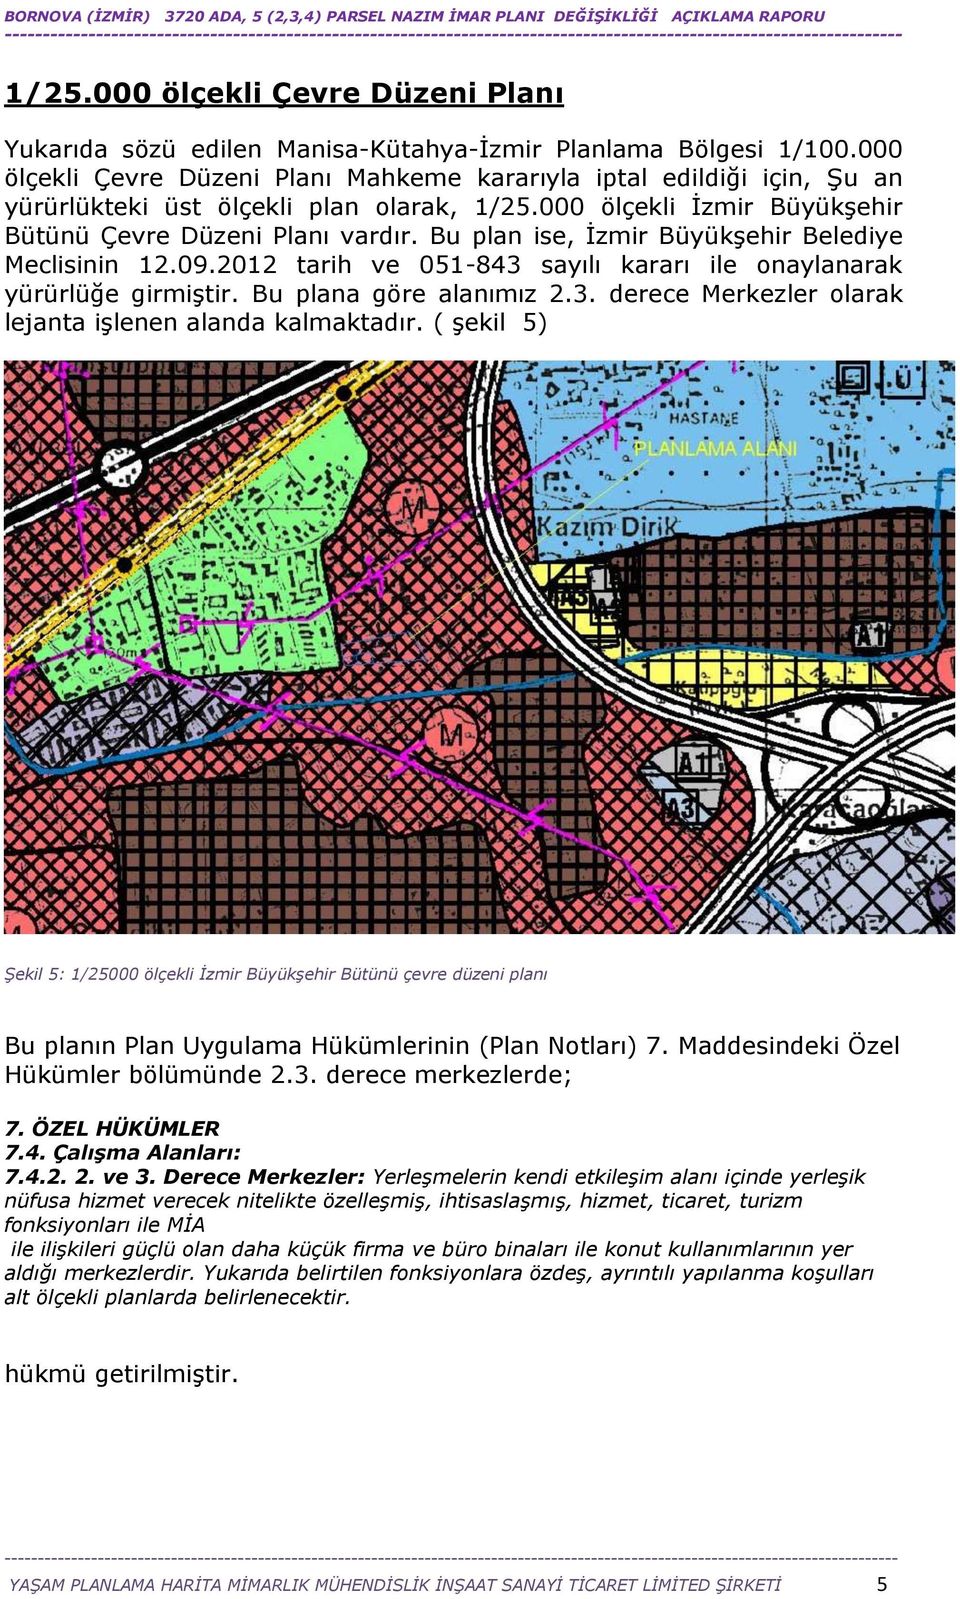 Bu plan ise, İzmir Büyükşehir Belediye Meclisinin 12.09.2012 tarih ve 051-843 sayılı kararı ile onaylanarak yürürlüğe girmiştir. Bu plana göre alanımız 2.3. derece Merkezler olarak lejanta işlenen alanda kalmaktadır.